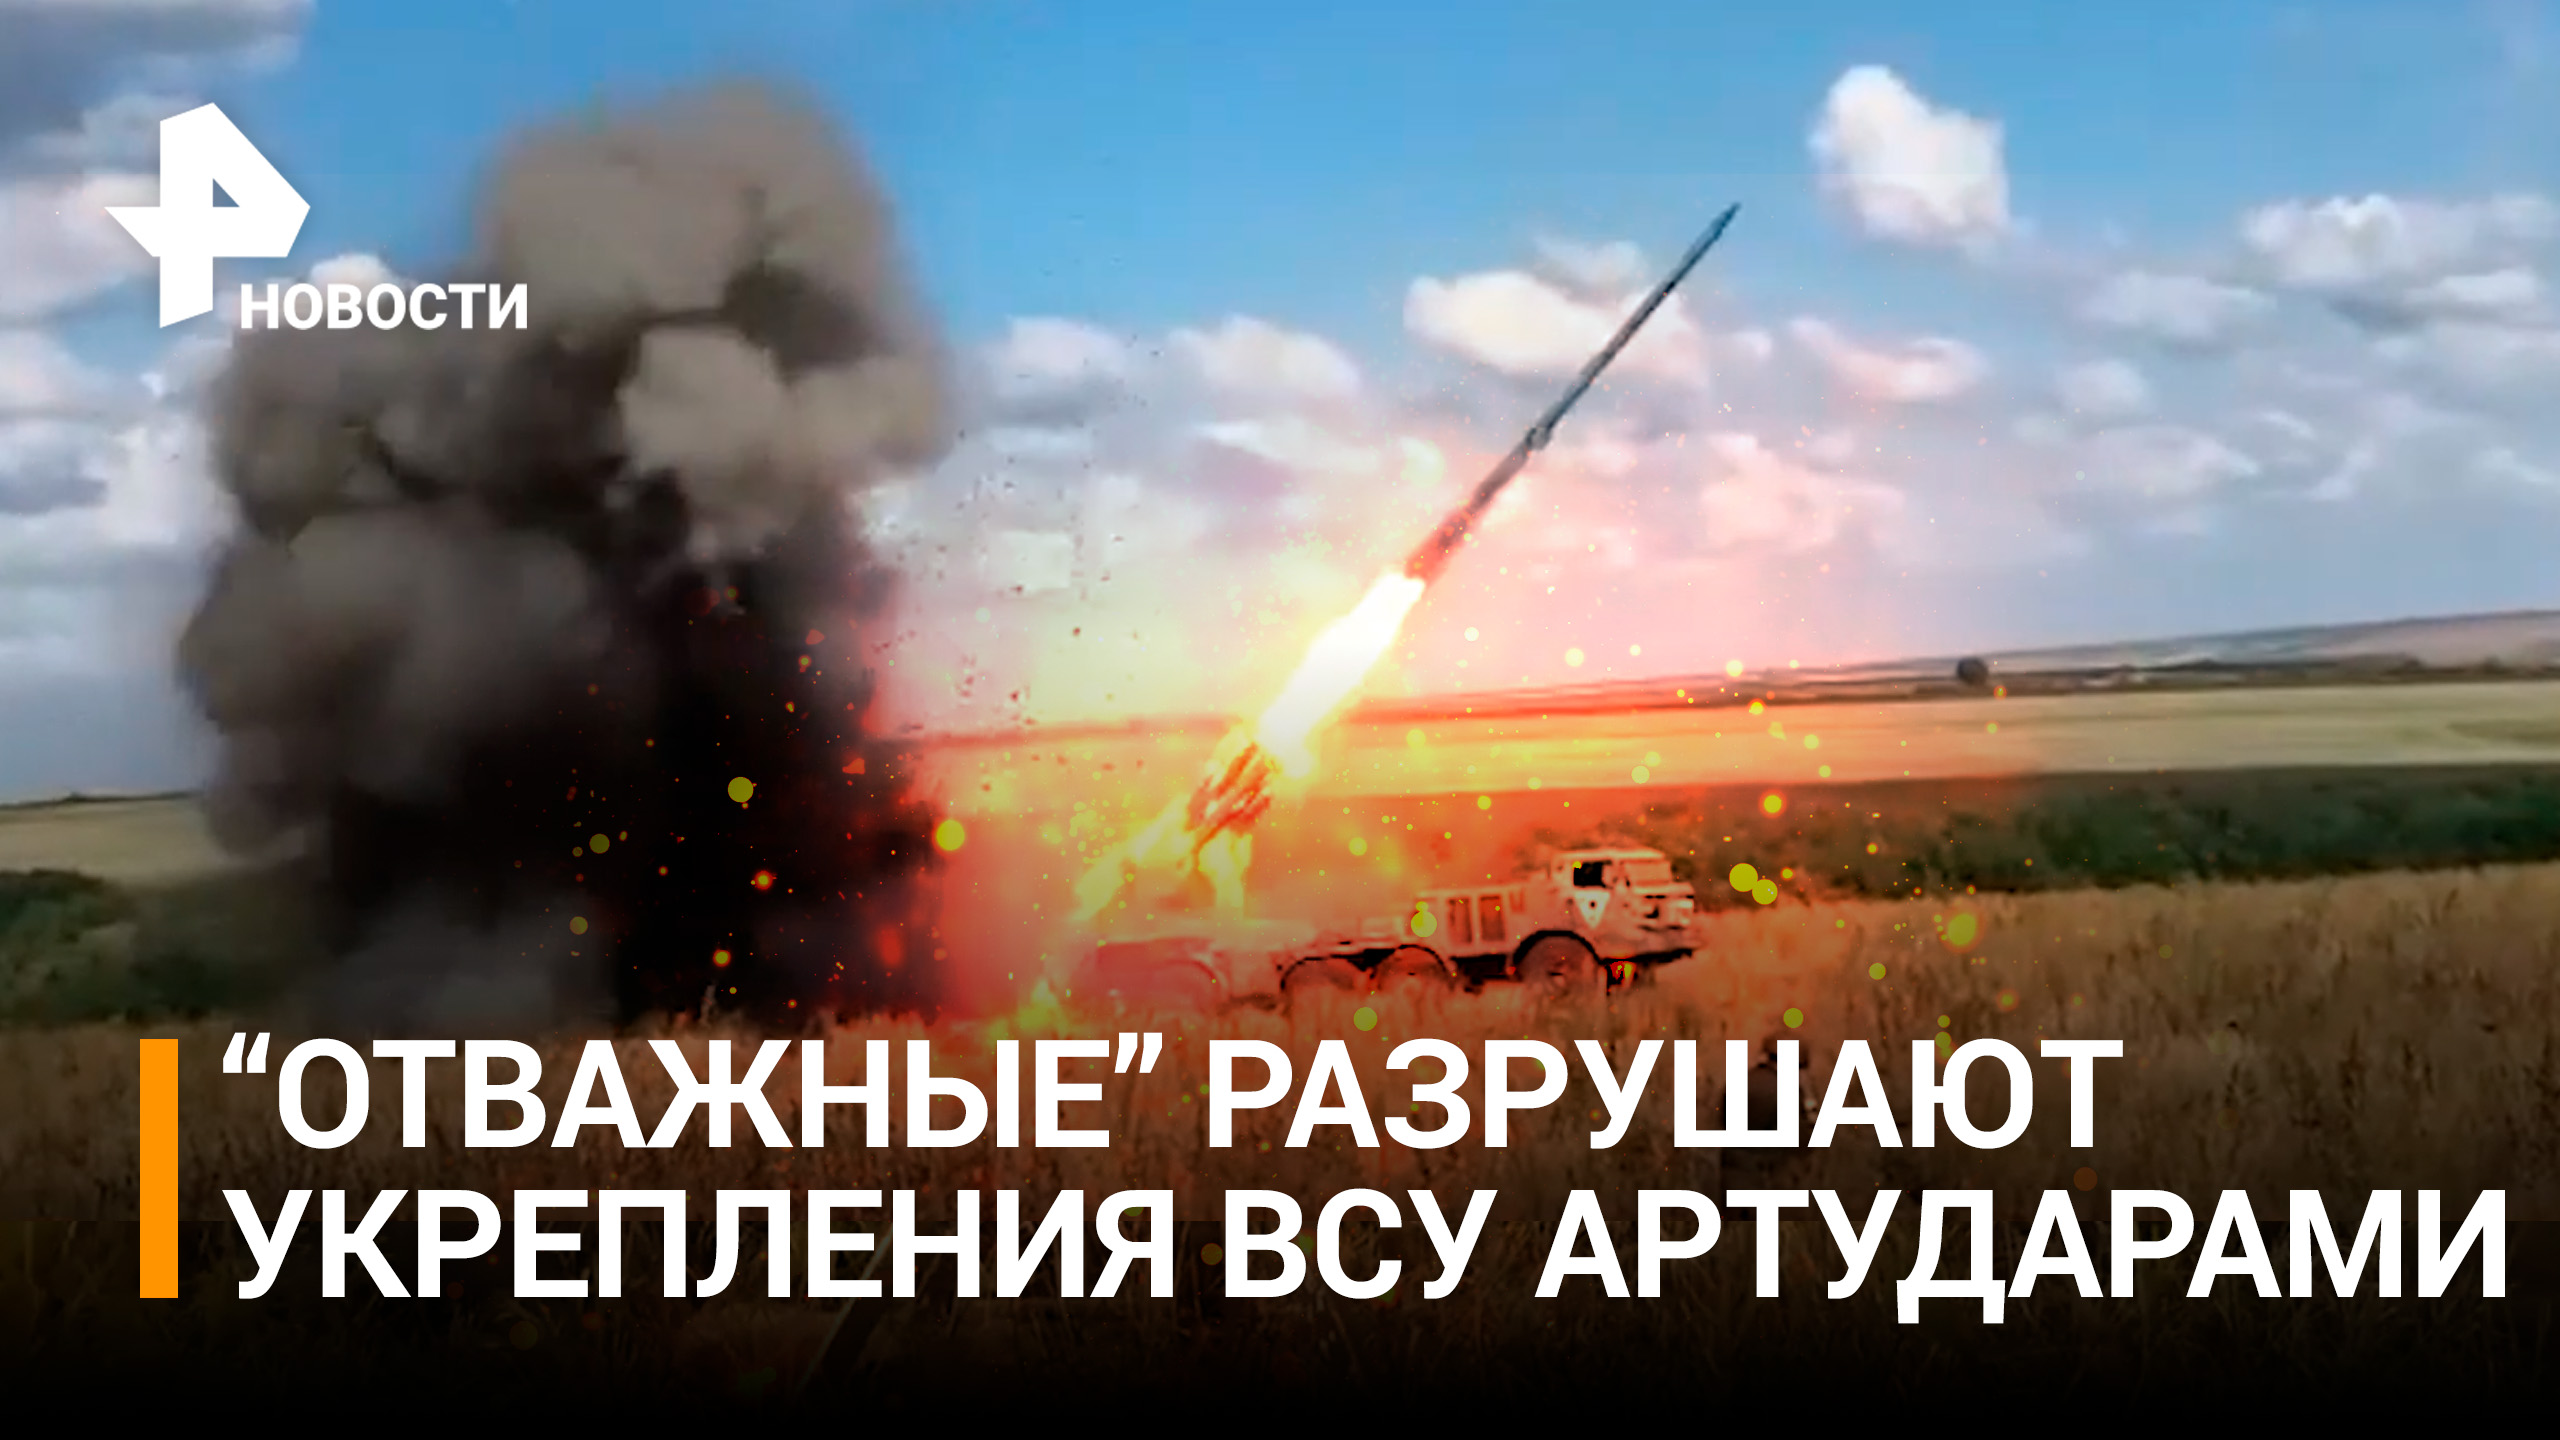 Бойцы мотострелкового подразделения предотвратили наступление ВСУ / РЕН Новости